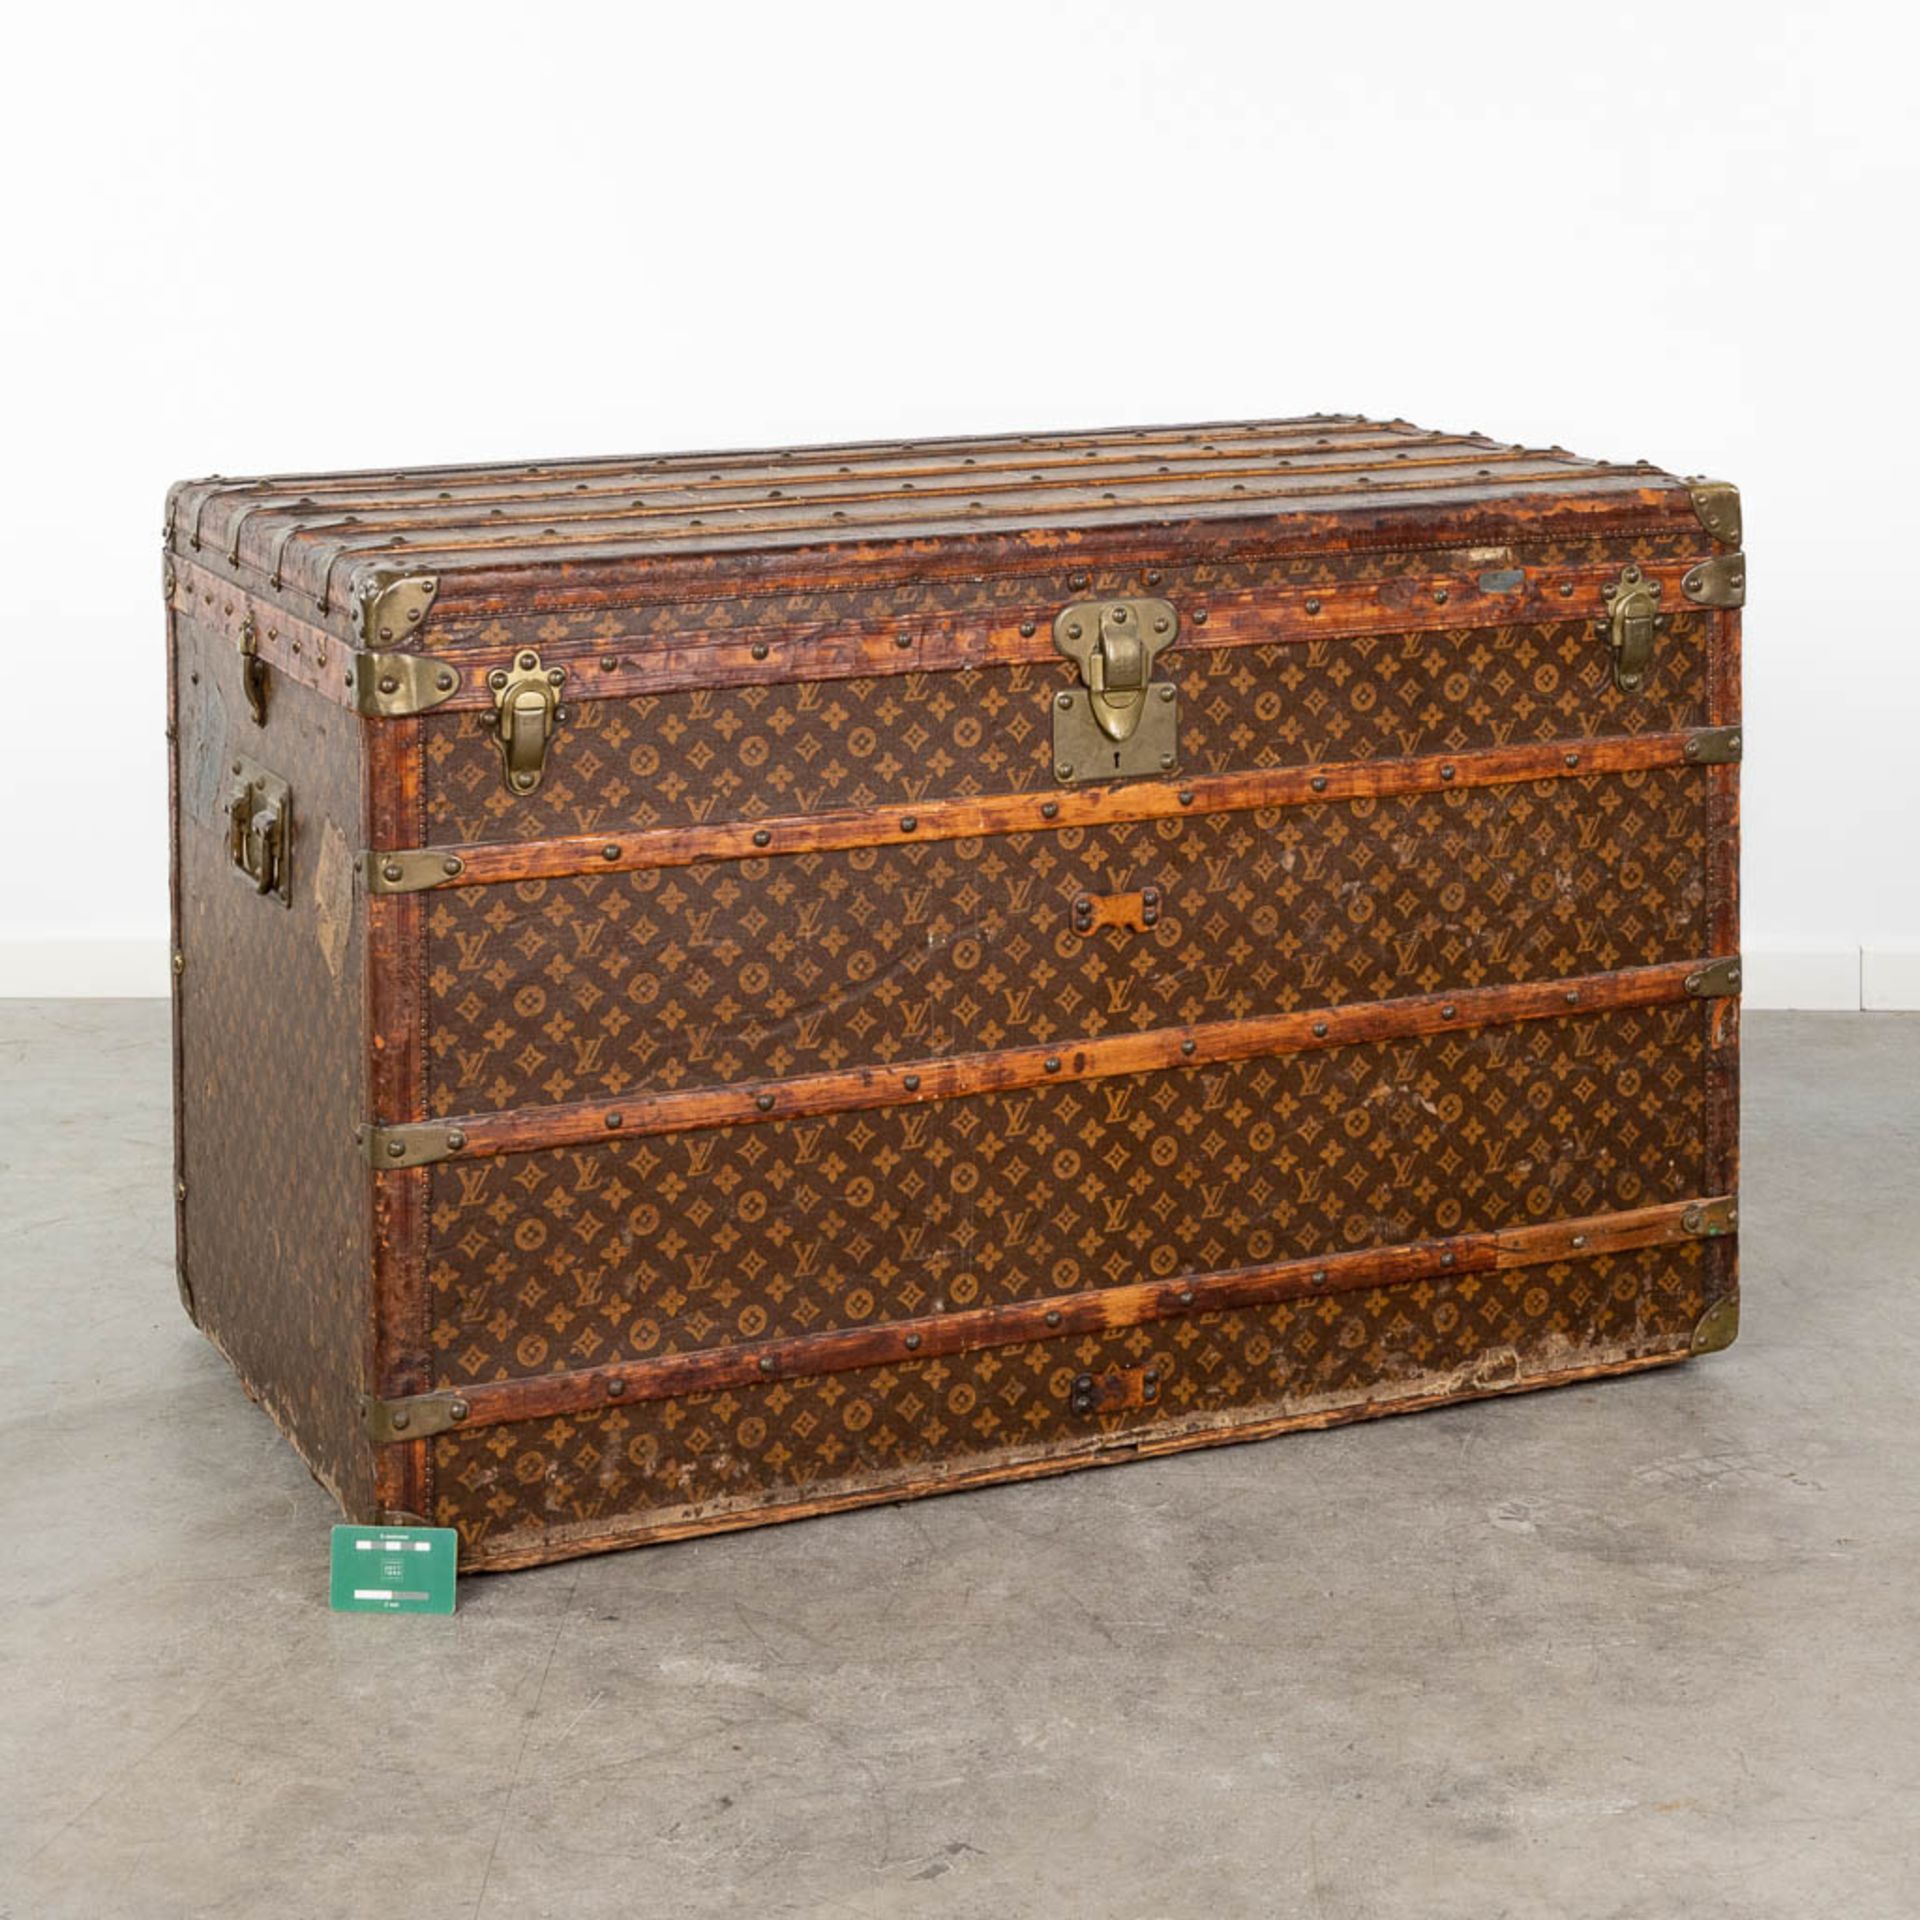 Louis Vuitton, a large and antique suitcase. (L:63 x W:113 x H:72 cm) - Bild 2 aus 25